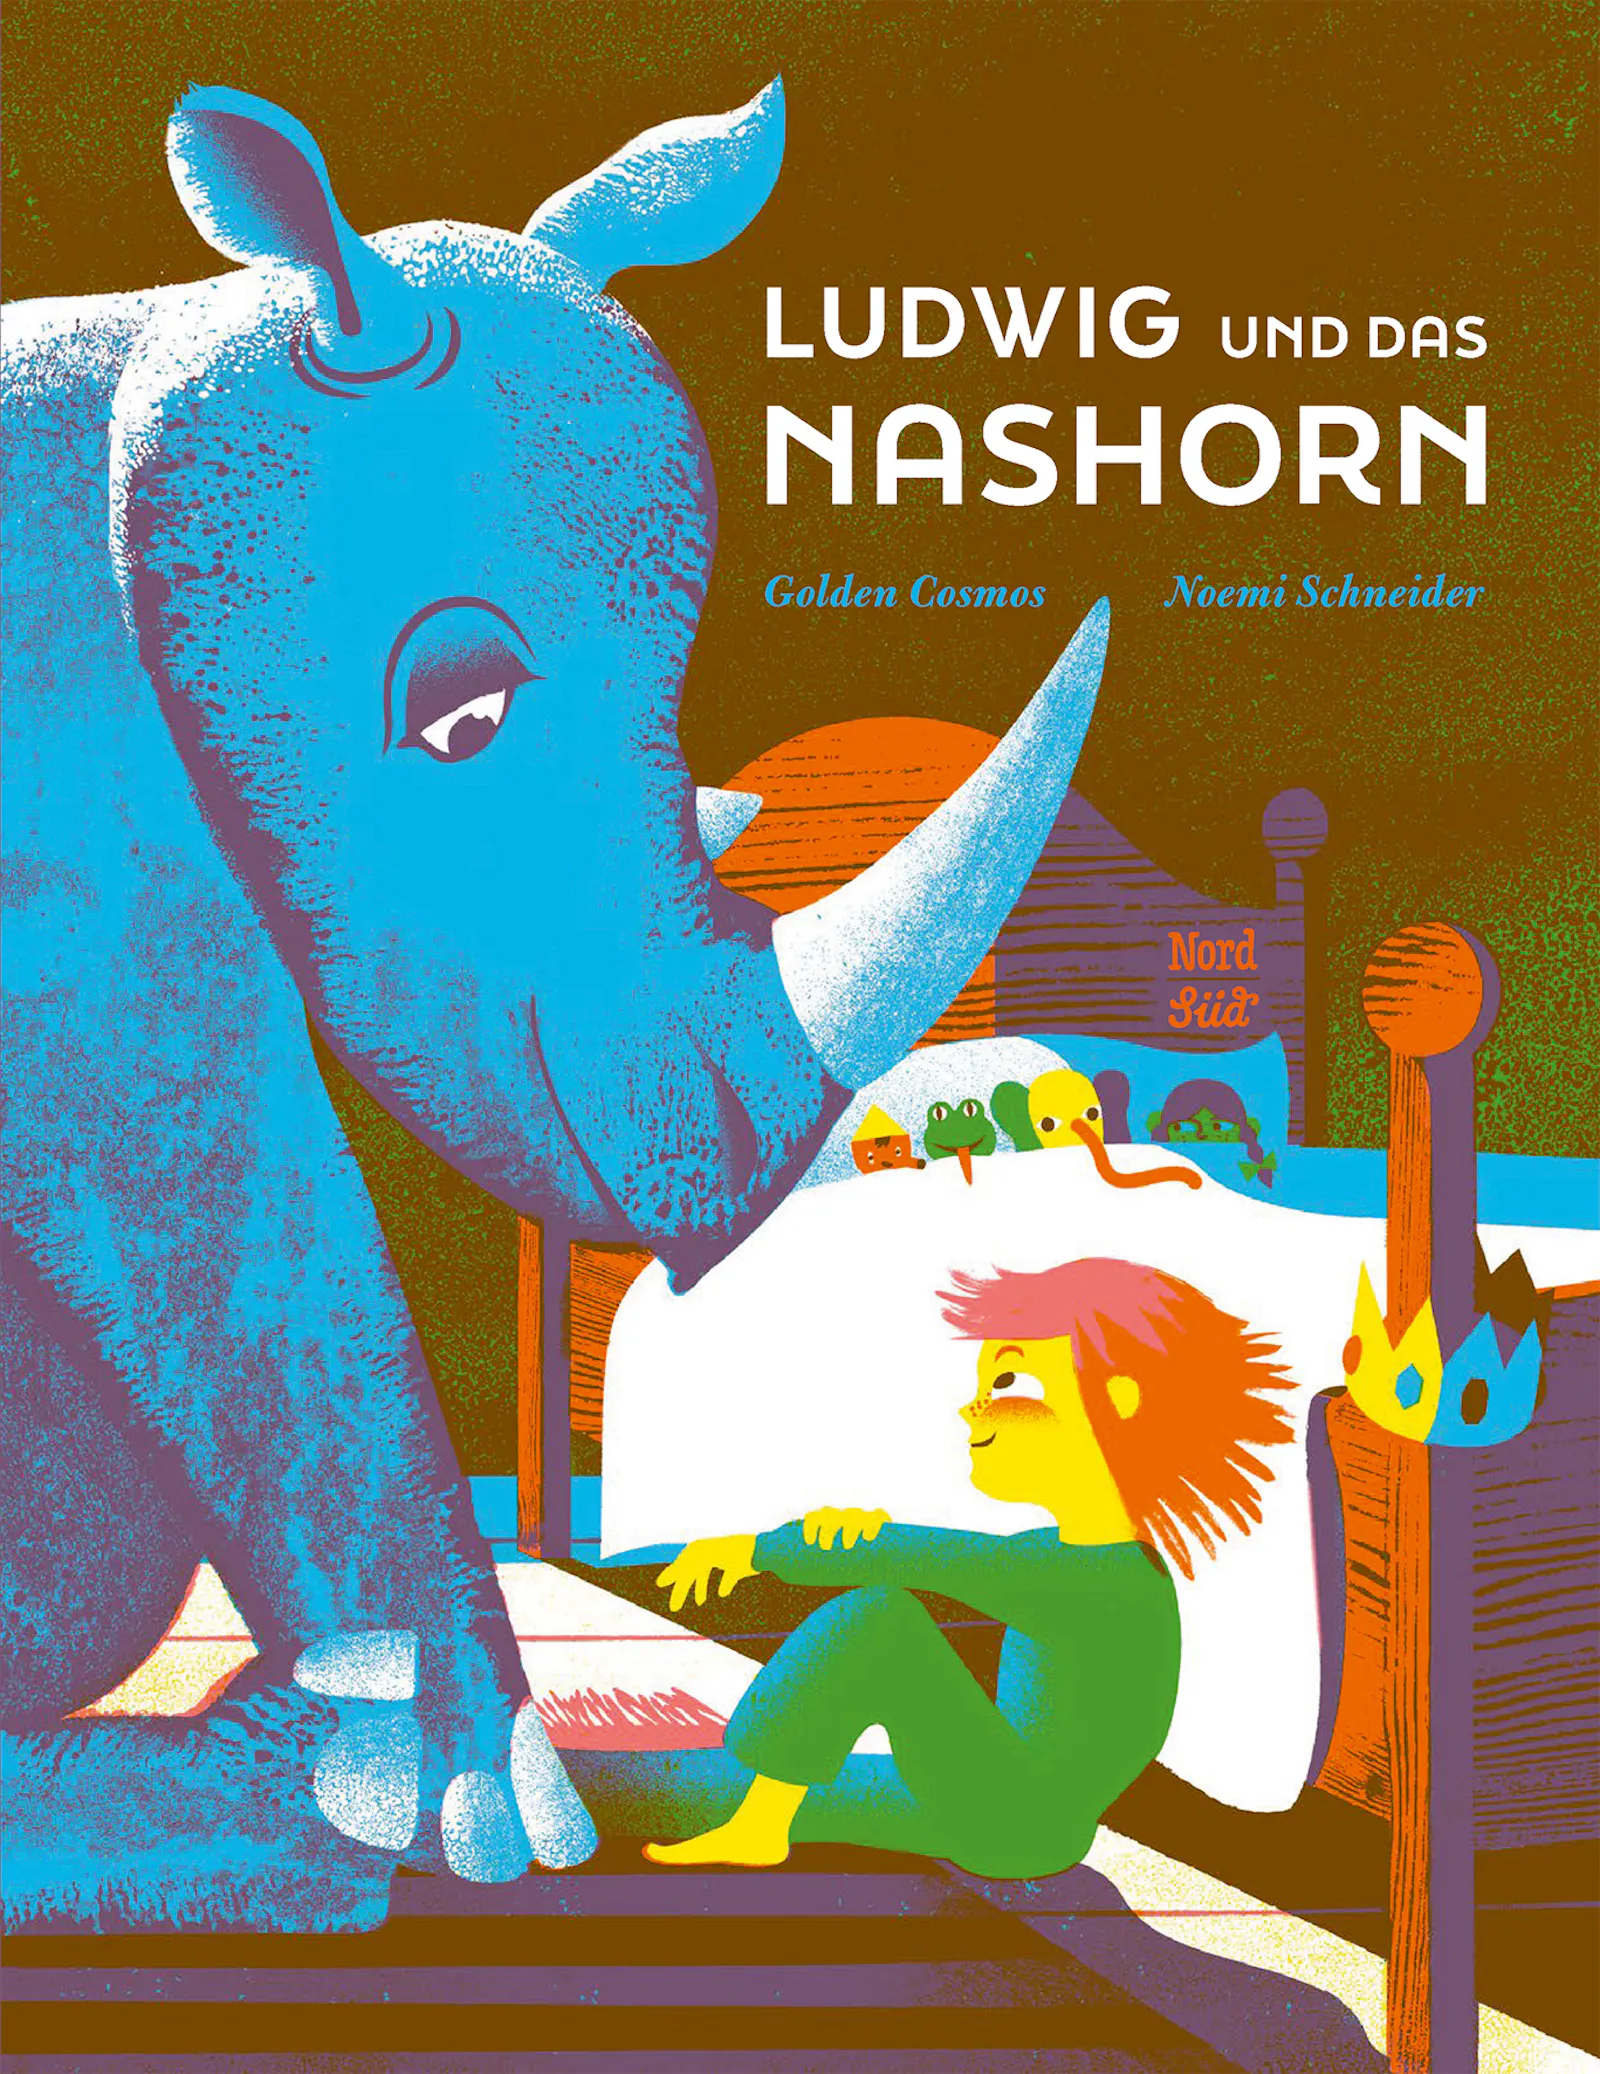 Cover von "Ludwig und das Nashorn" von Golden Cosmos und Noemi Schneider aus dem Nord Süd Verlag.